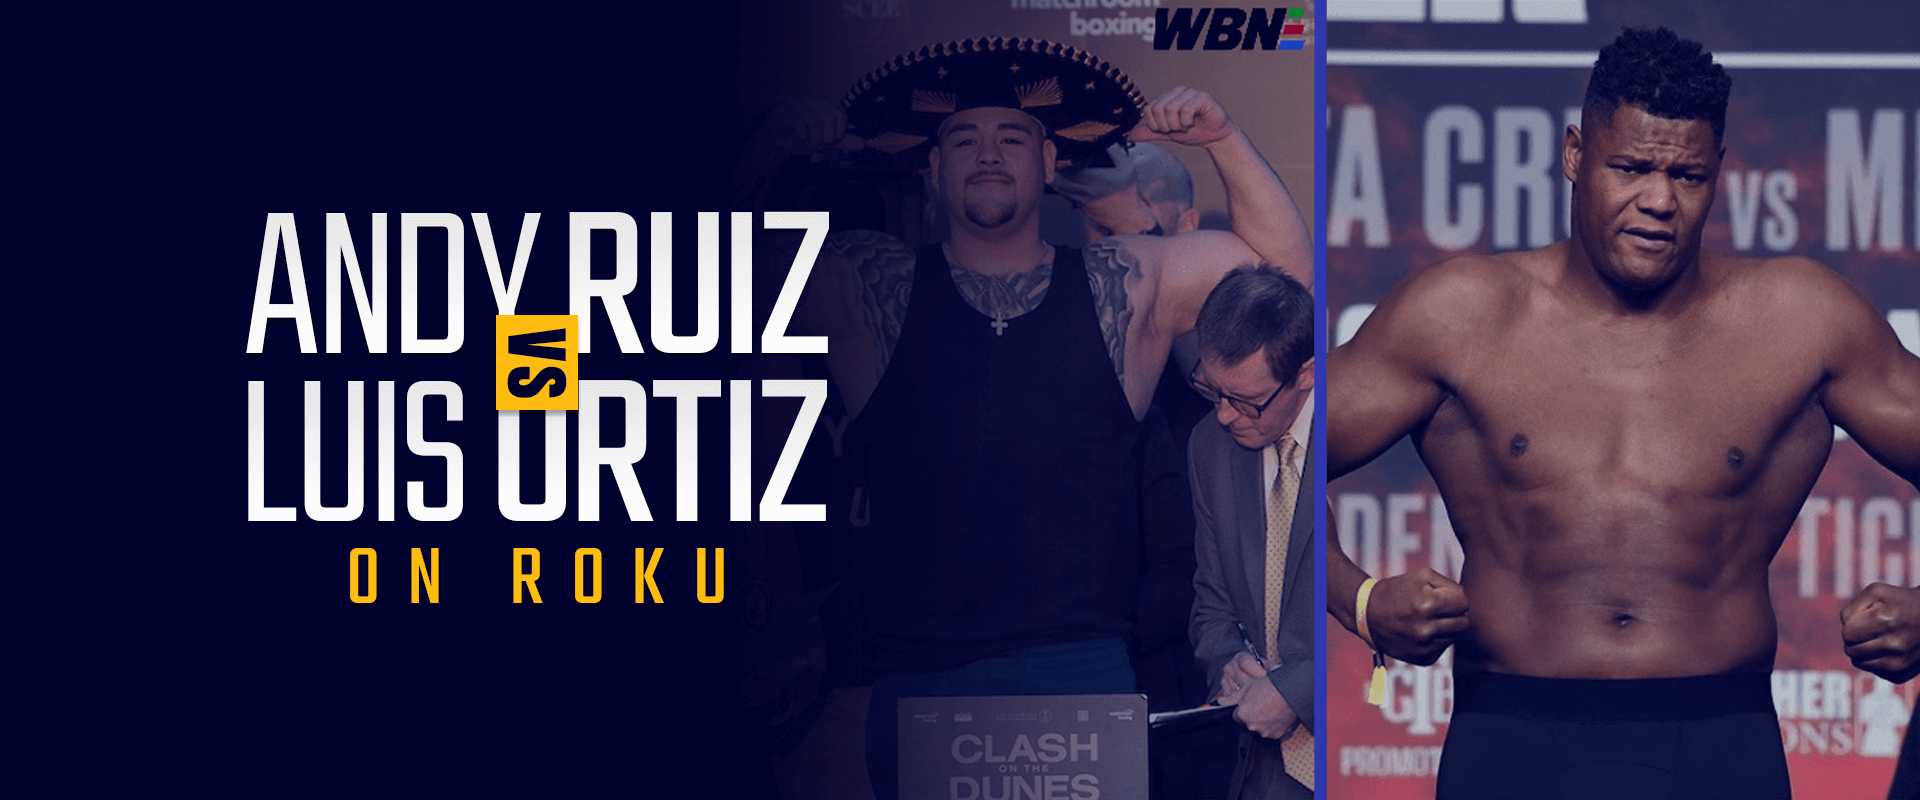 How to Watch Andy Ruiz vs Luis Ortiz on Roku